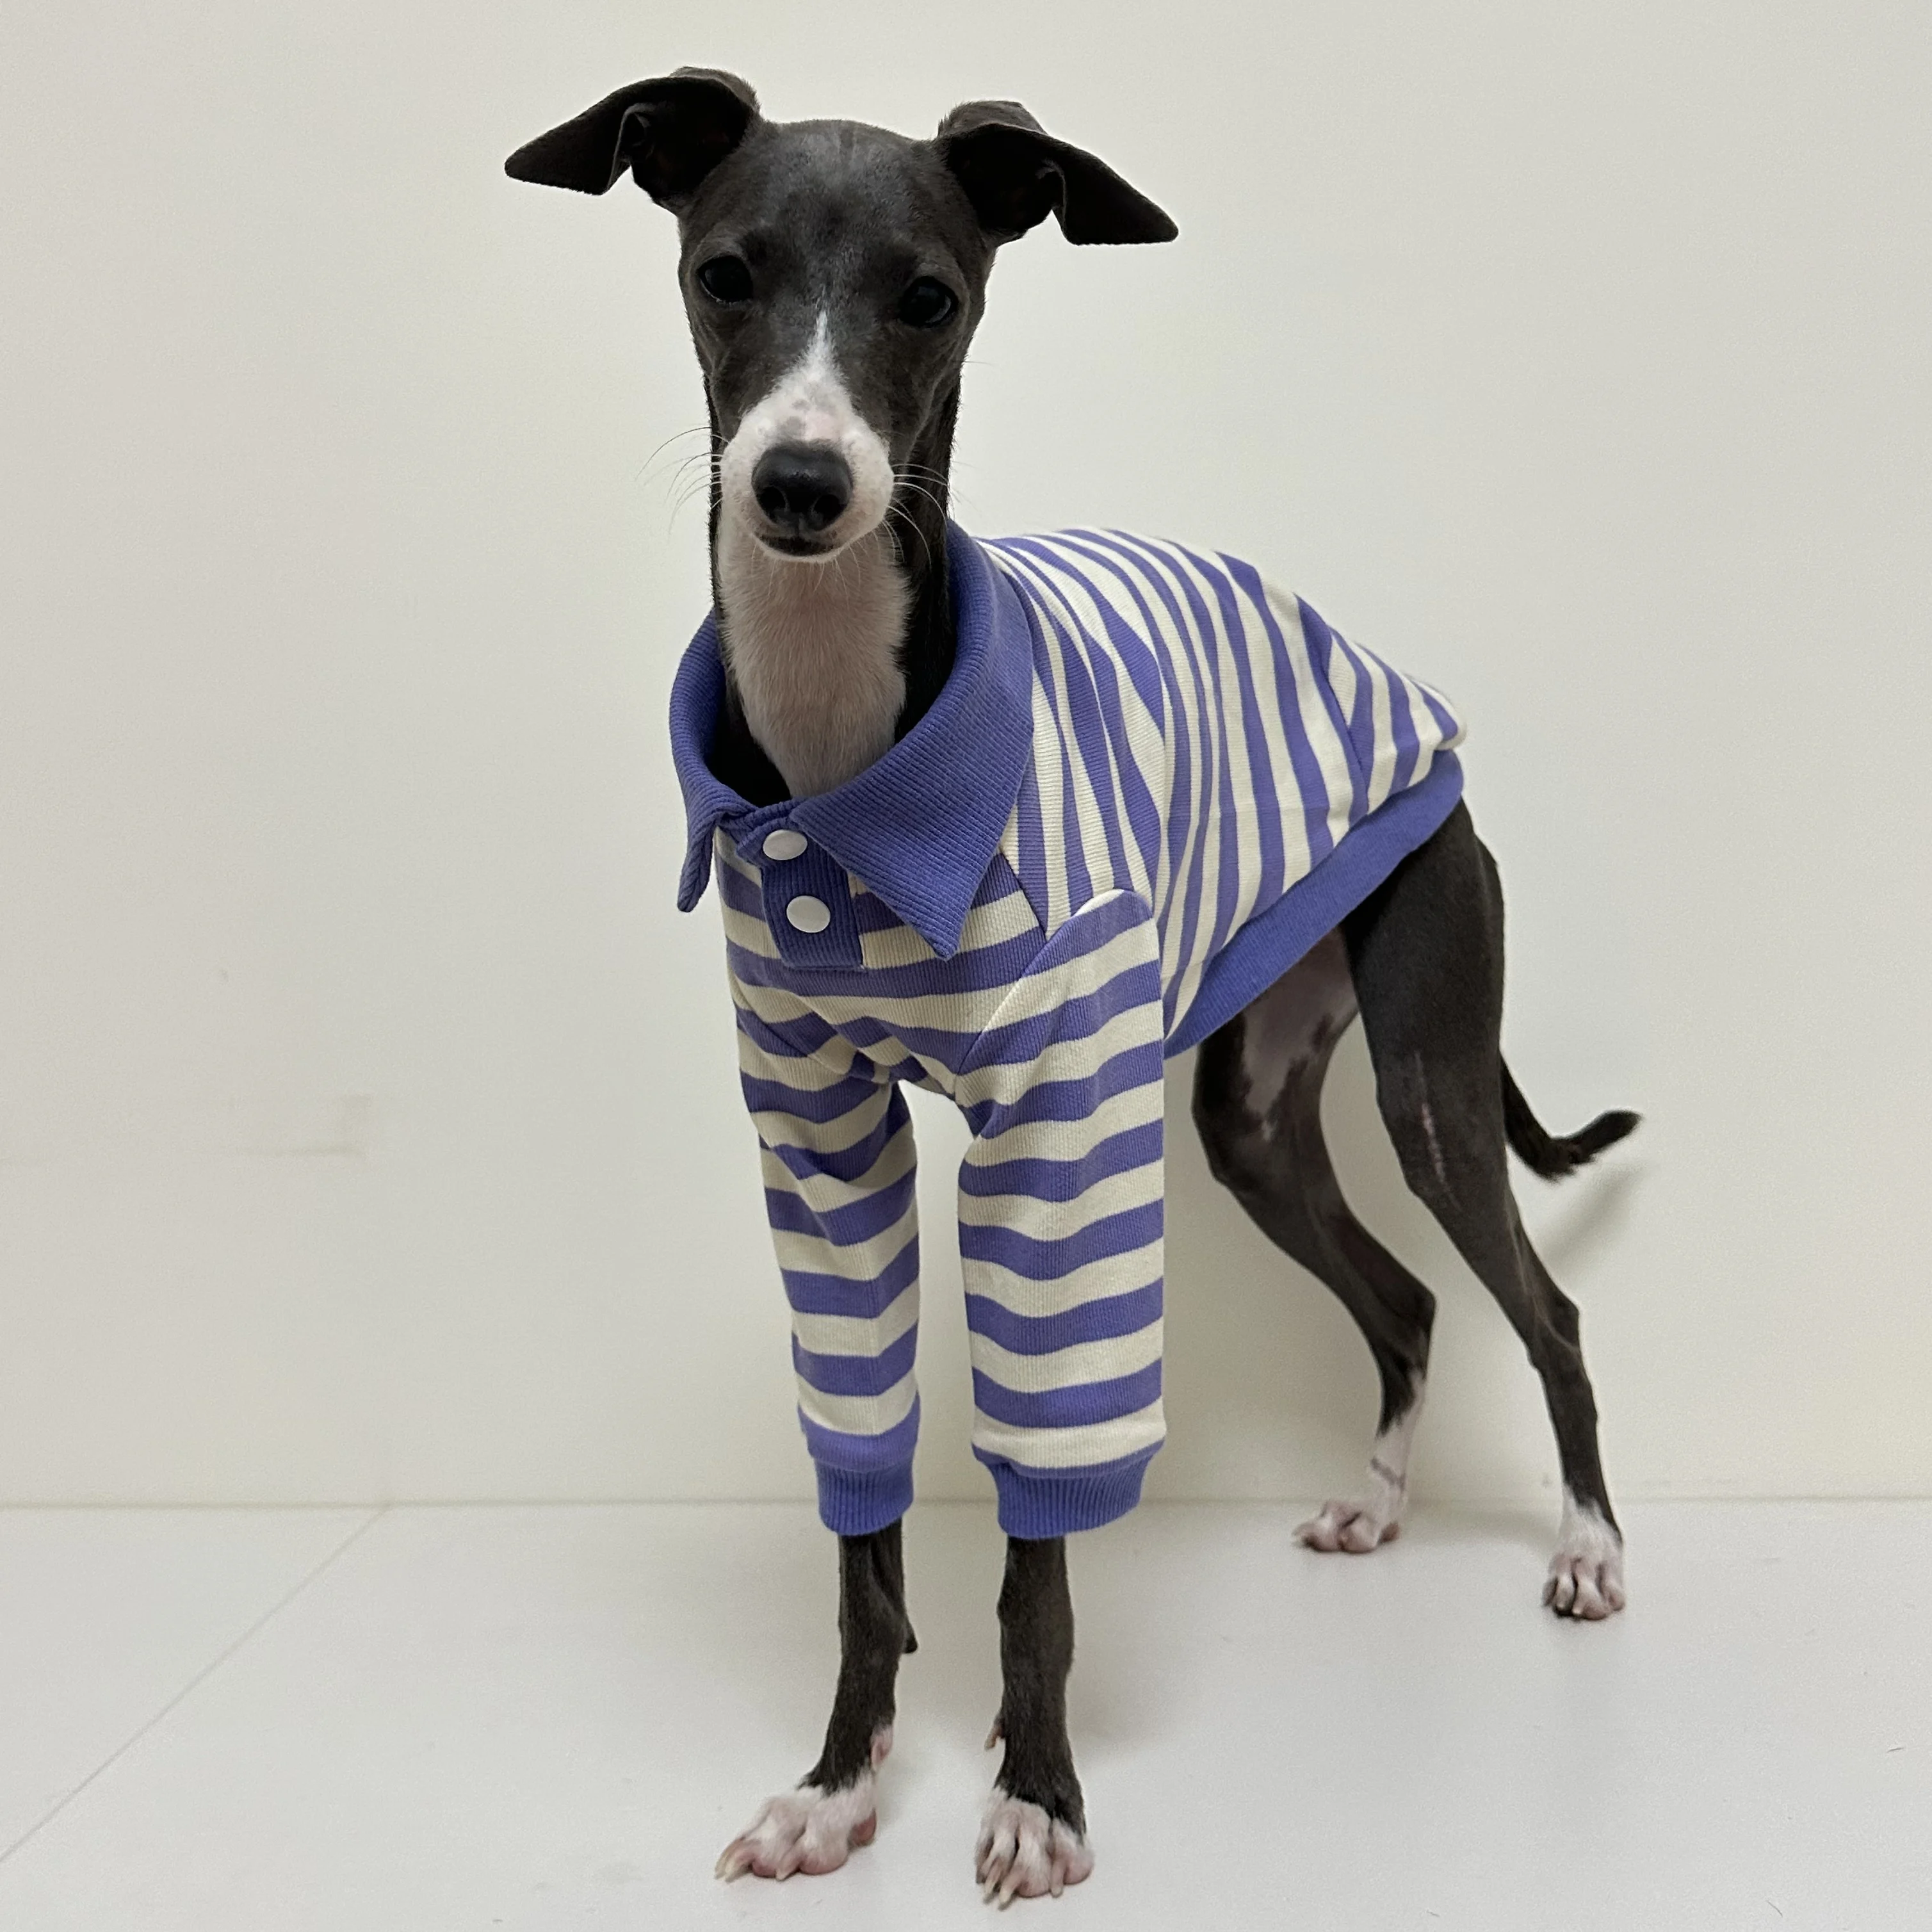 

Одежда для собак, рубашка-поло из чистого хлопка Greyhound, летнее платье, полосатая футболка для питомца, костюм для собаки, мягкий пуловер, костюм для собаки, щенка